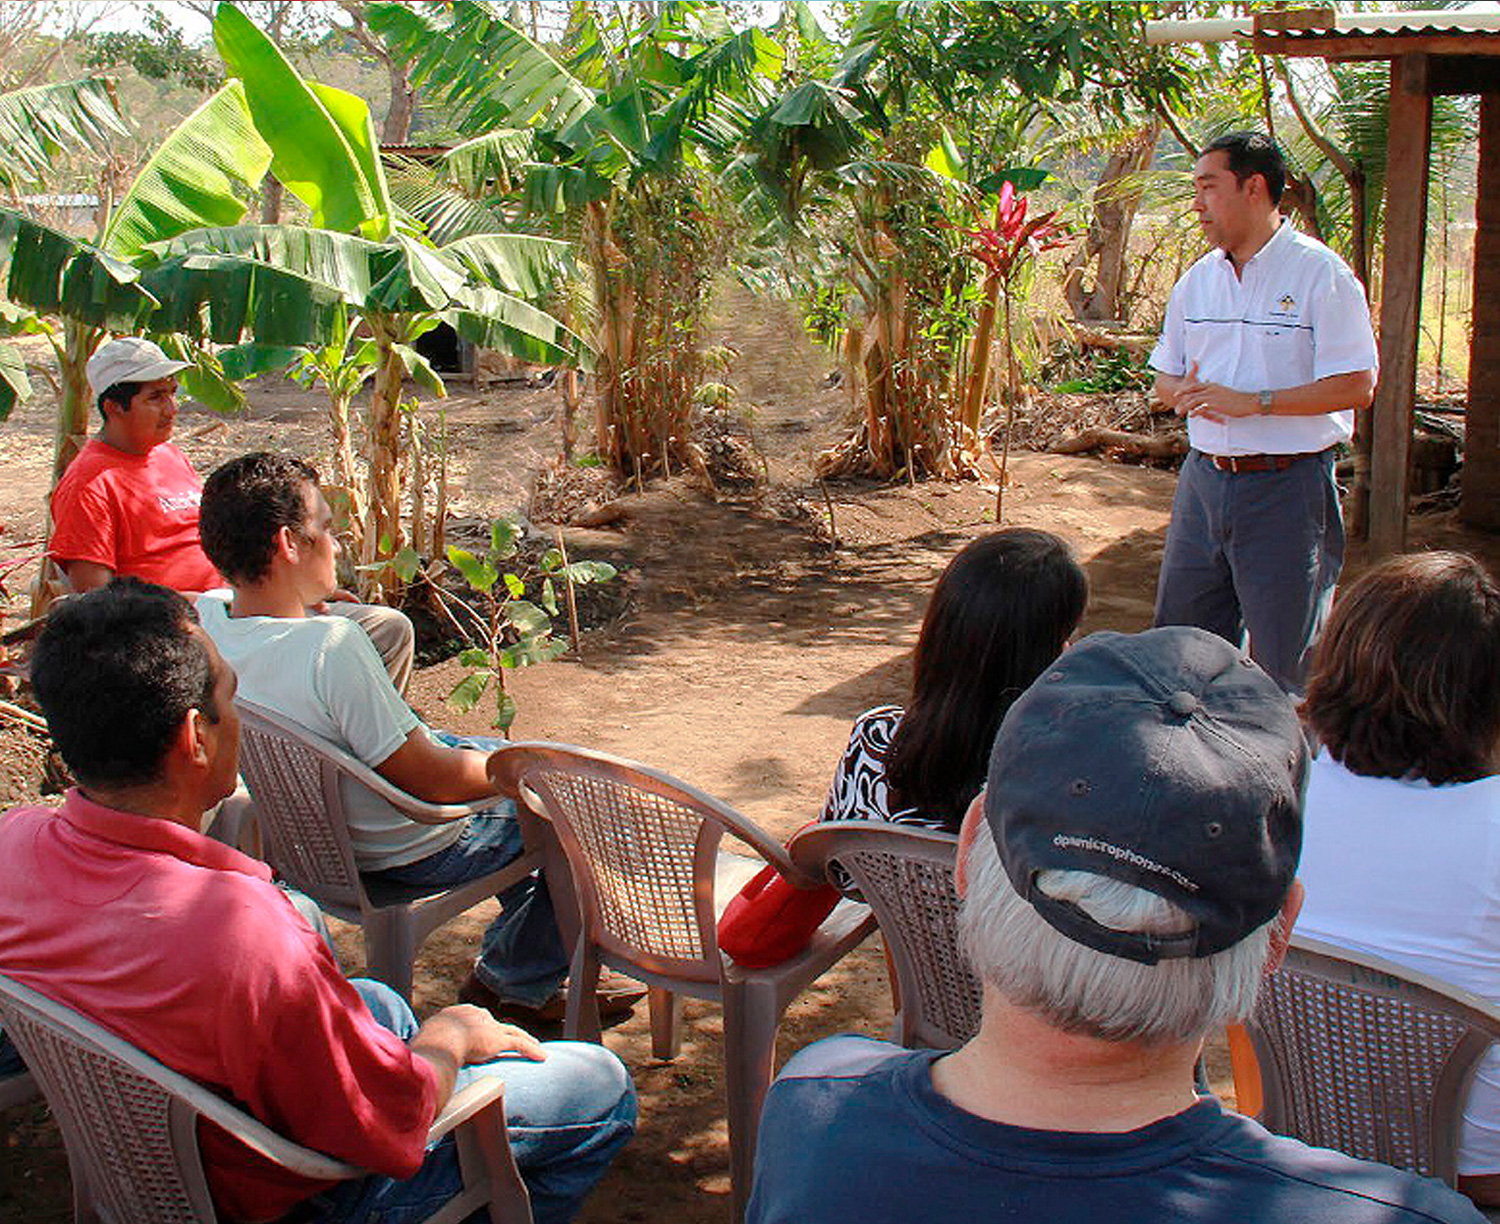 Un hombre latinoamericano de pie da una charla sobre la lectura del medio ambiente a participantes sentados en una granja.